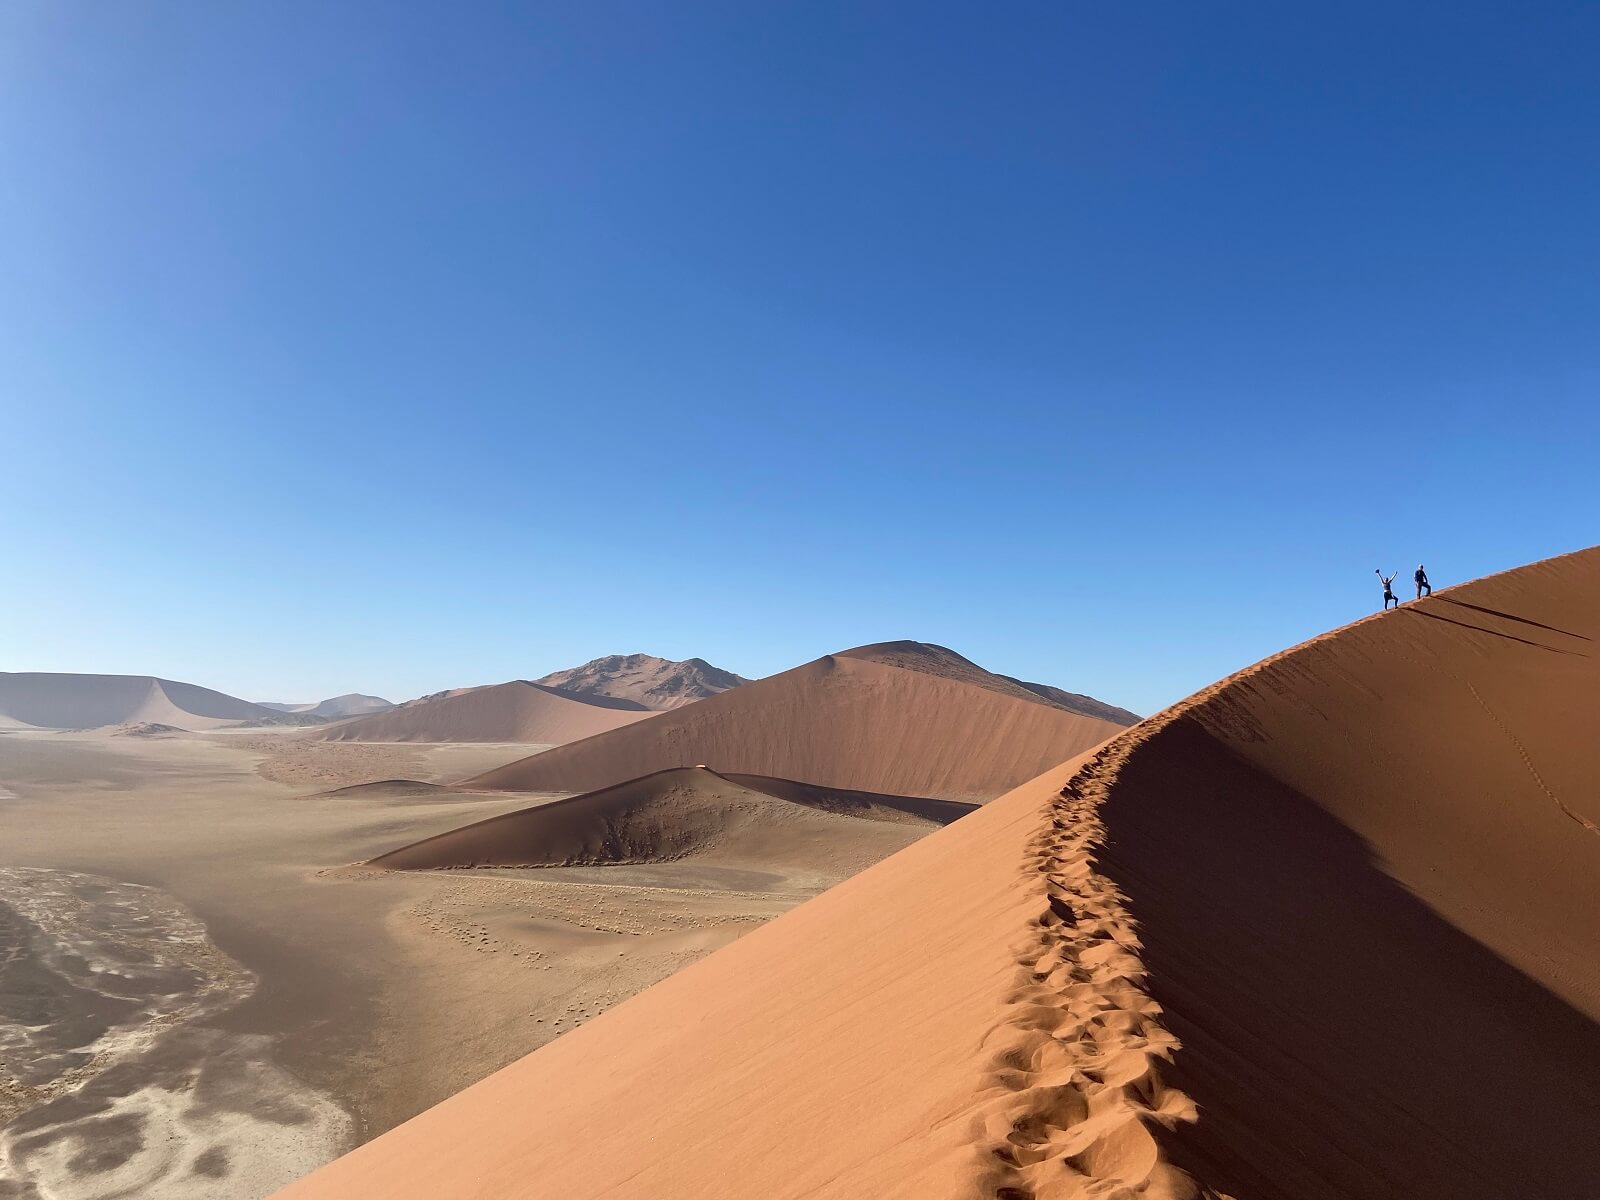 Climbing sandy dunes in Namib Desert